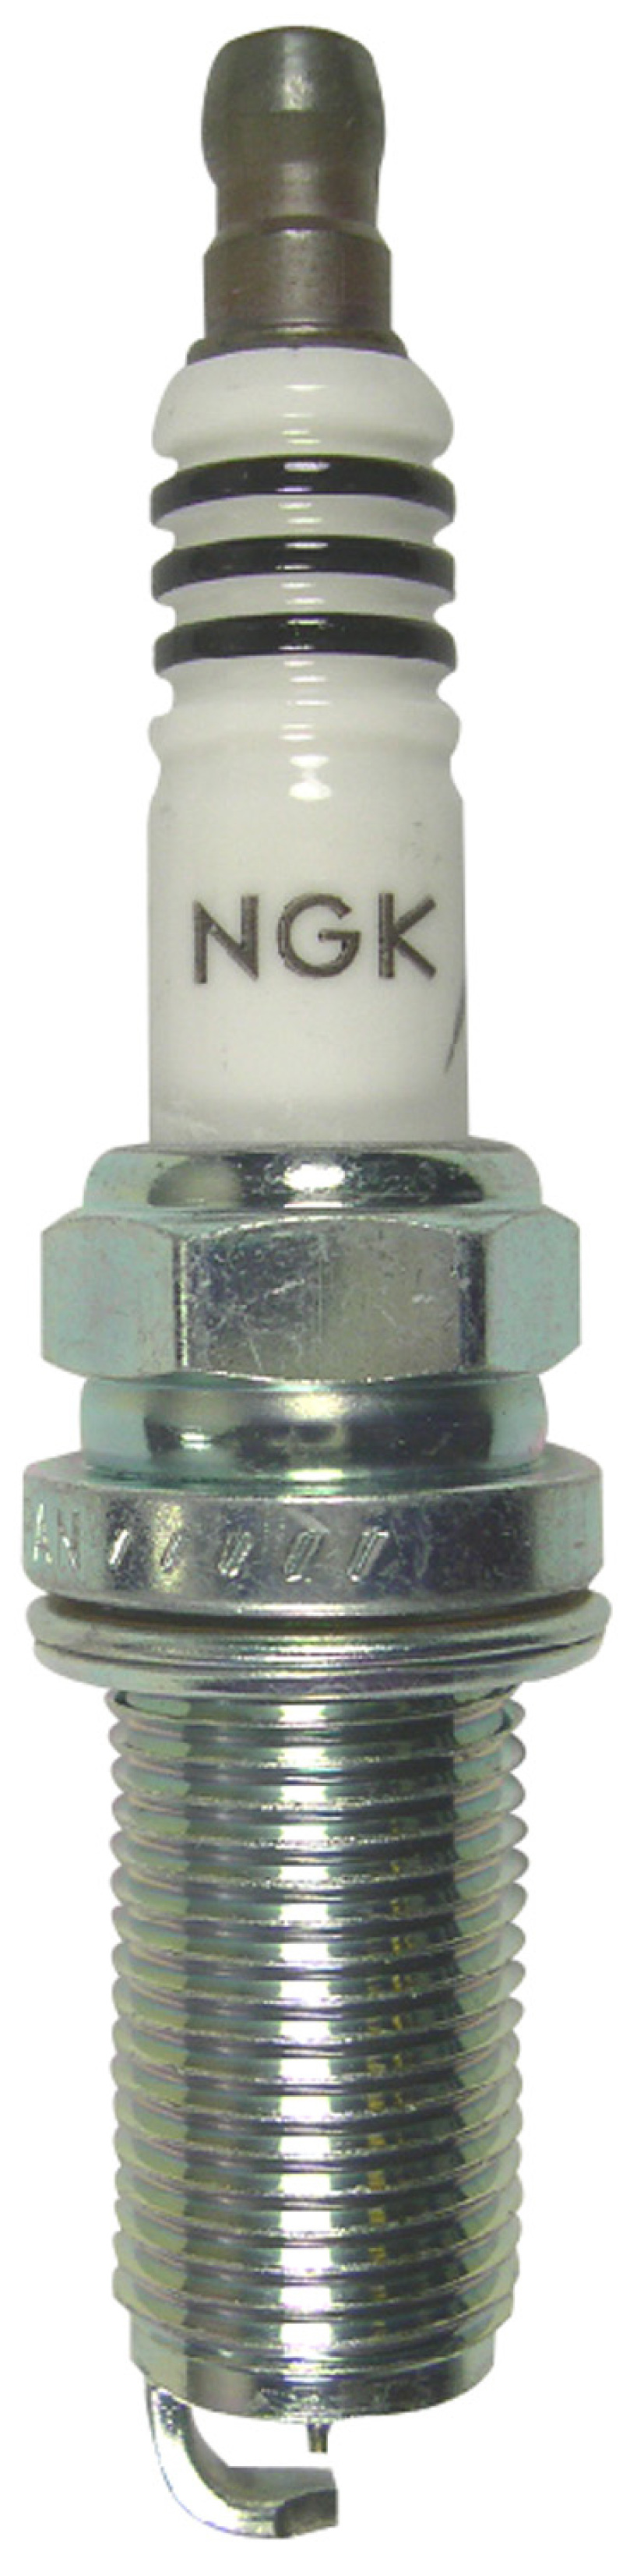 NGK Iridium Spark Plug Box of 4 (LFR7AIX) - 2309